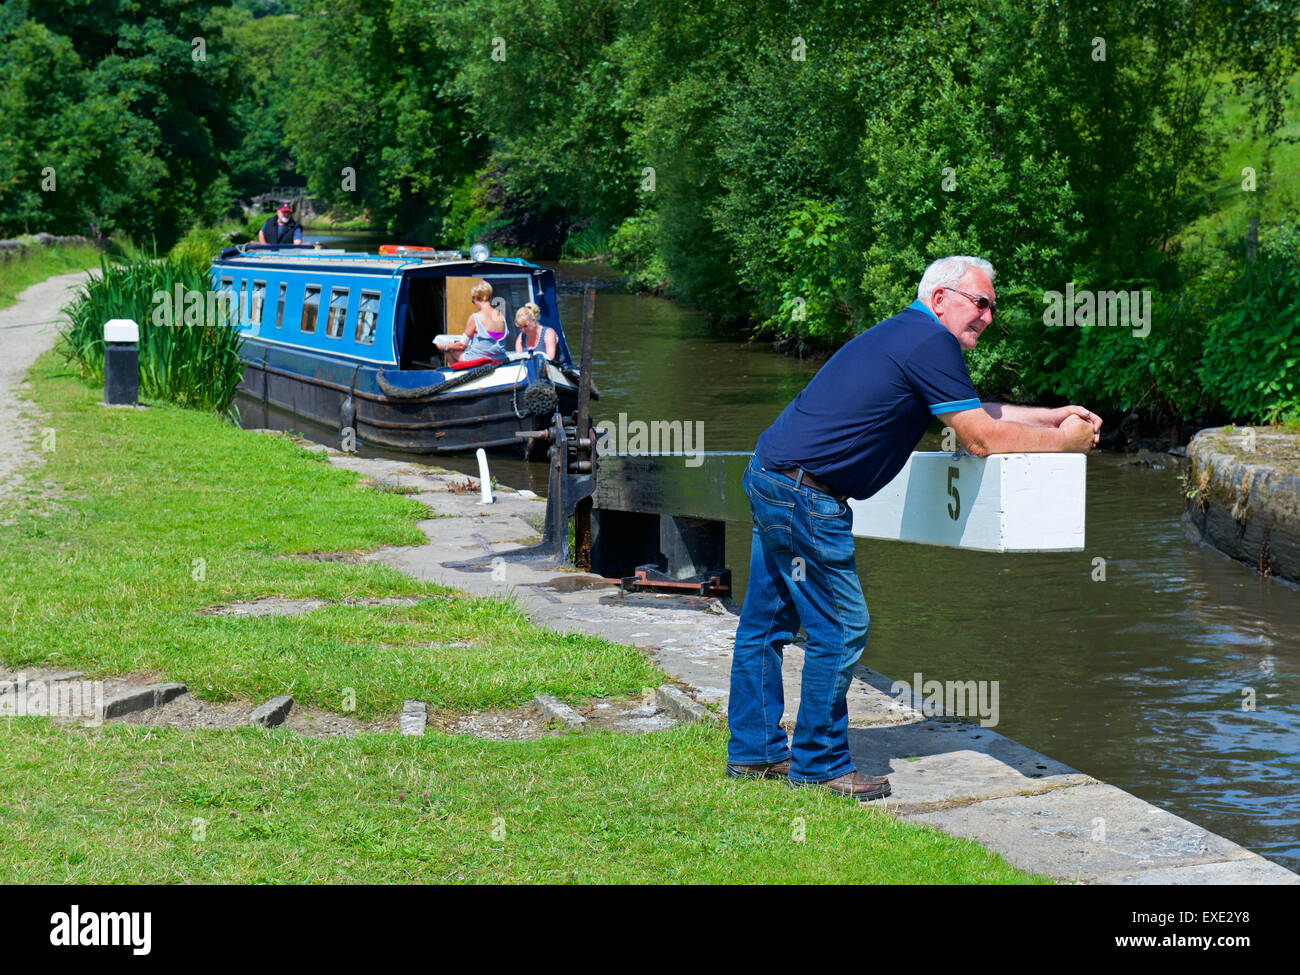 Narrowboat en bloqueo en el Rochdale Canal cerca de Hebden Bridge, West Yorkshire, Inglaterra Foto de stock